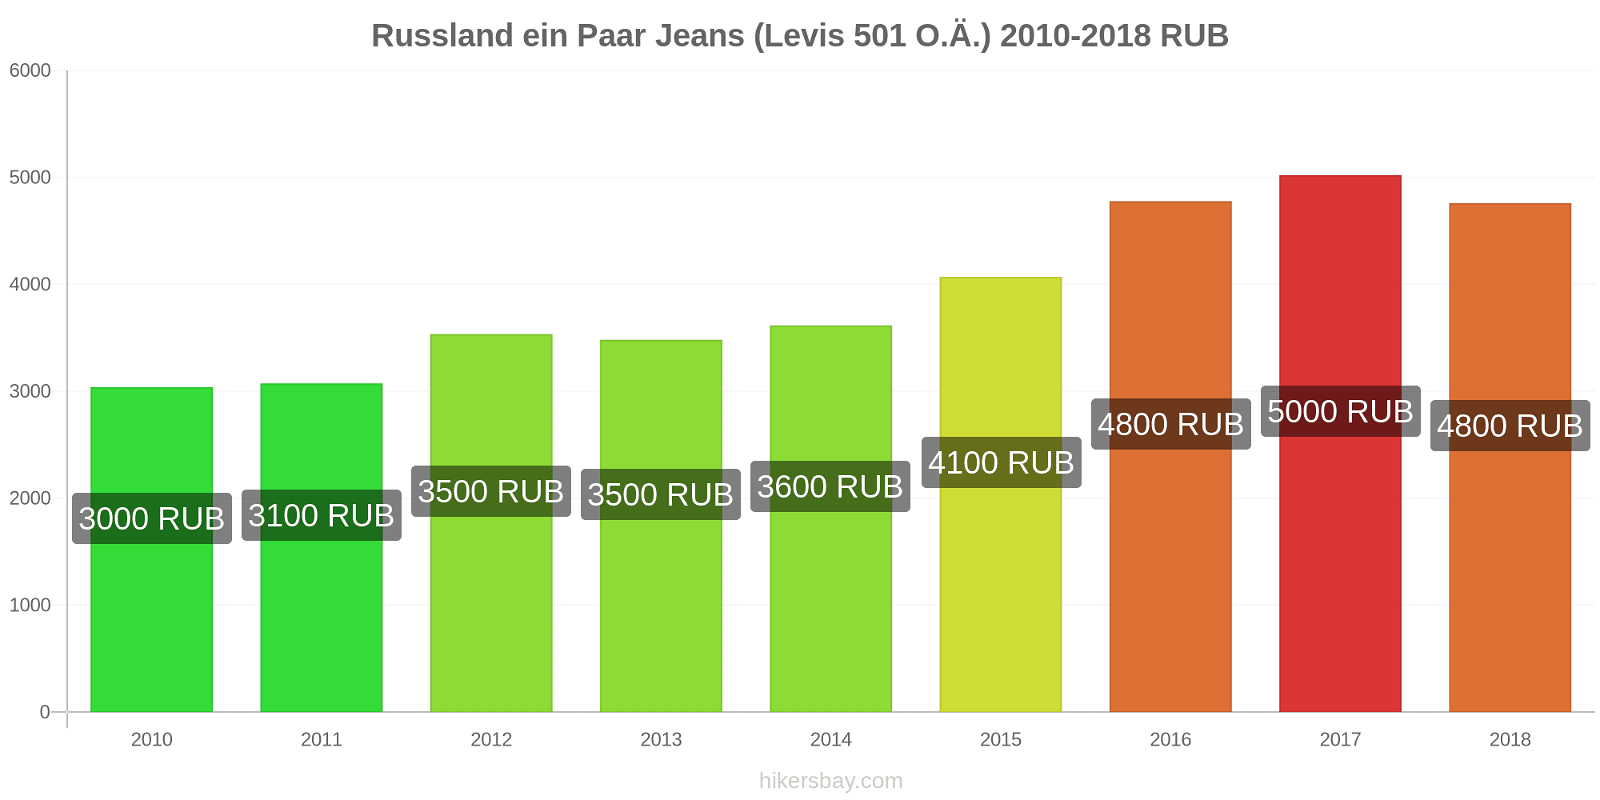 Russland Preisänderungen 1 Paar Jeans (Levis 501 oder ähnlich) hikersbay.com